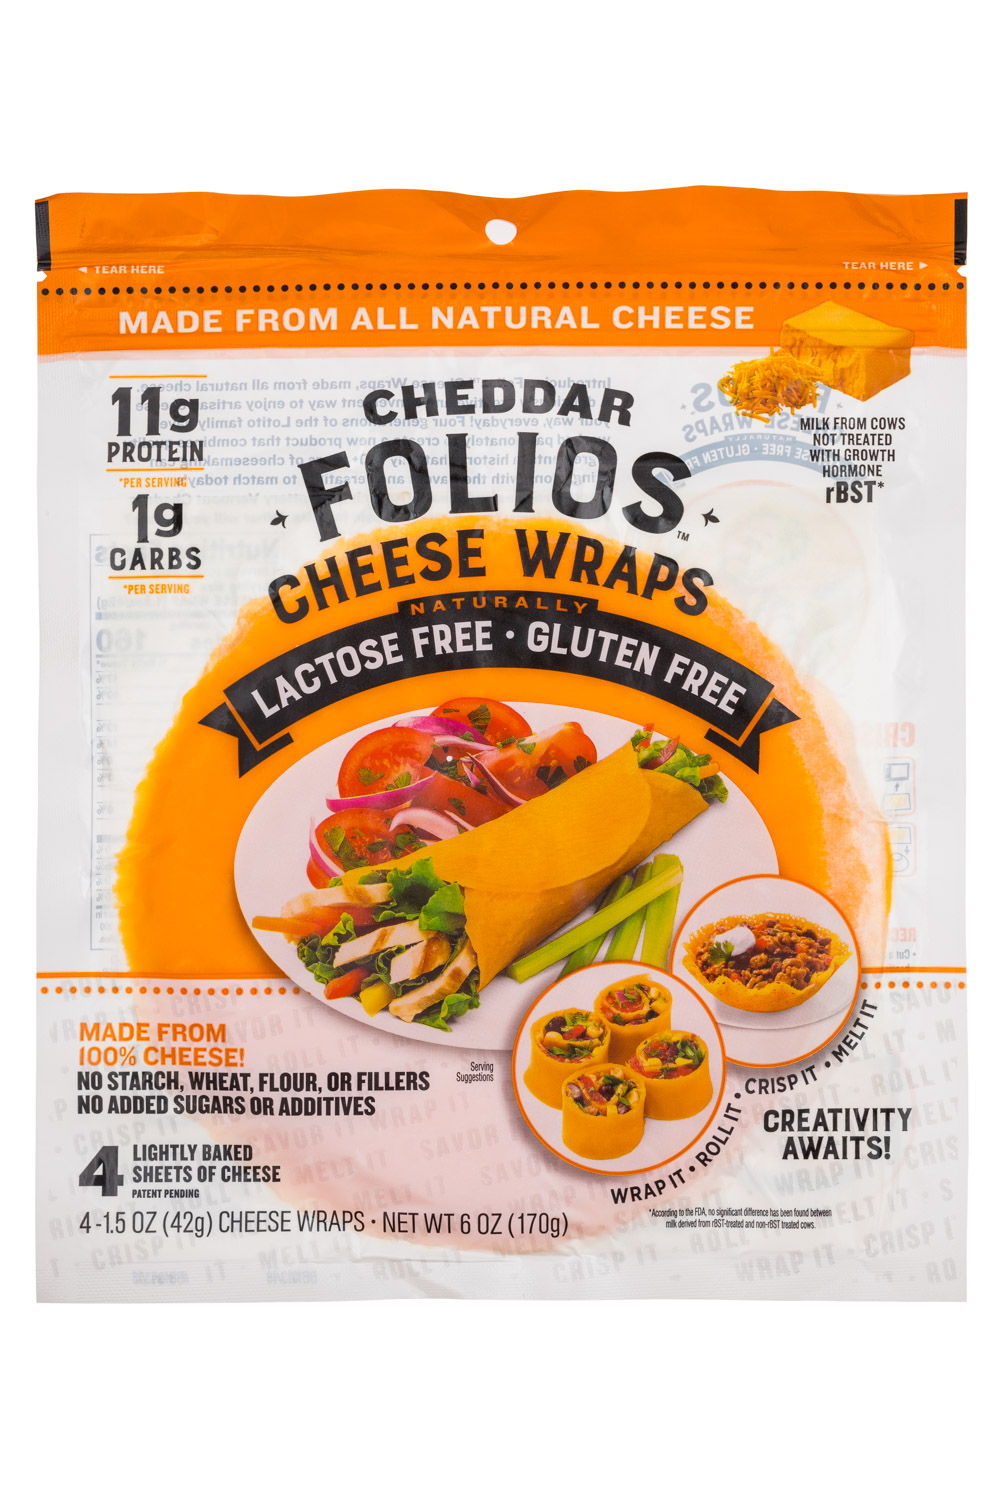 folio cheese wraps ideas